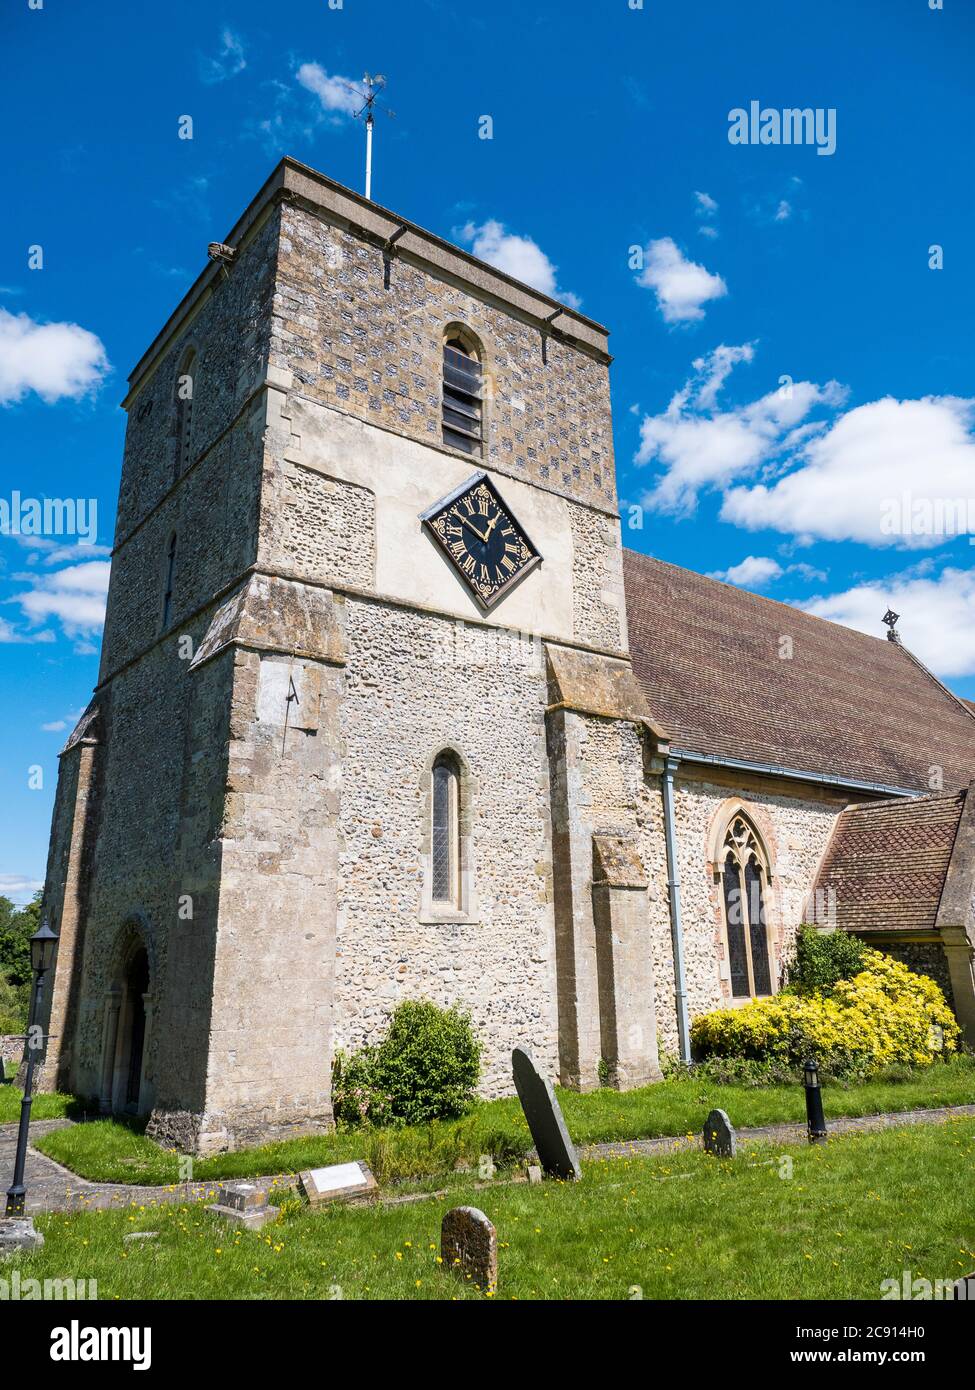 Jour d'été, église St Mary's, Kintbury, Berkshire, Angleterre, Royaume-Uni, GB. Banque D'Images